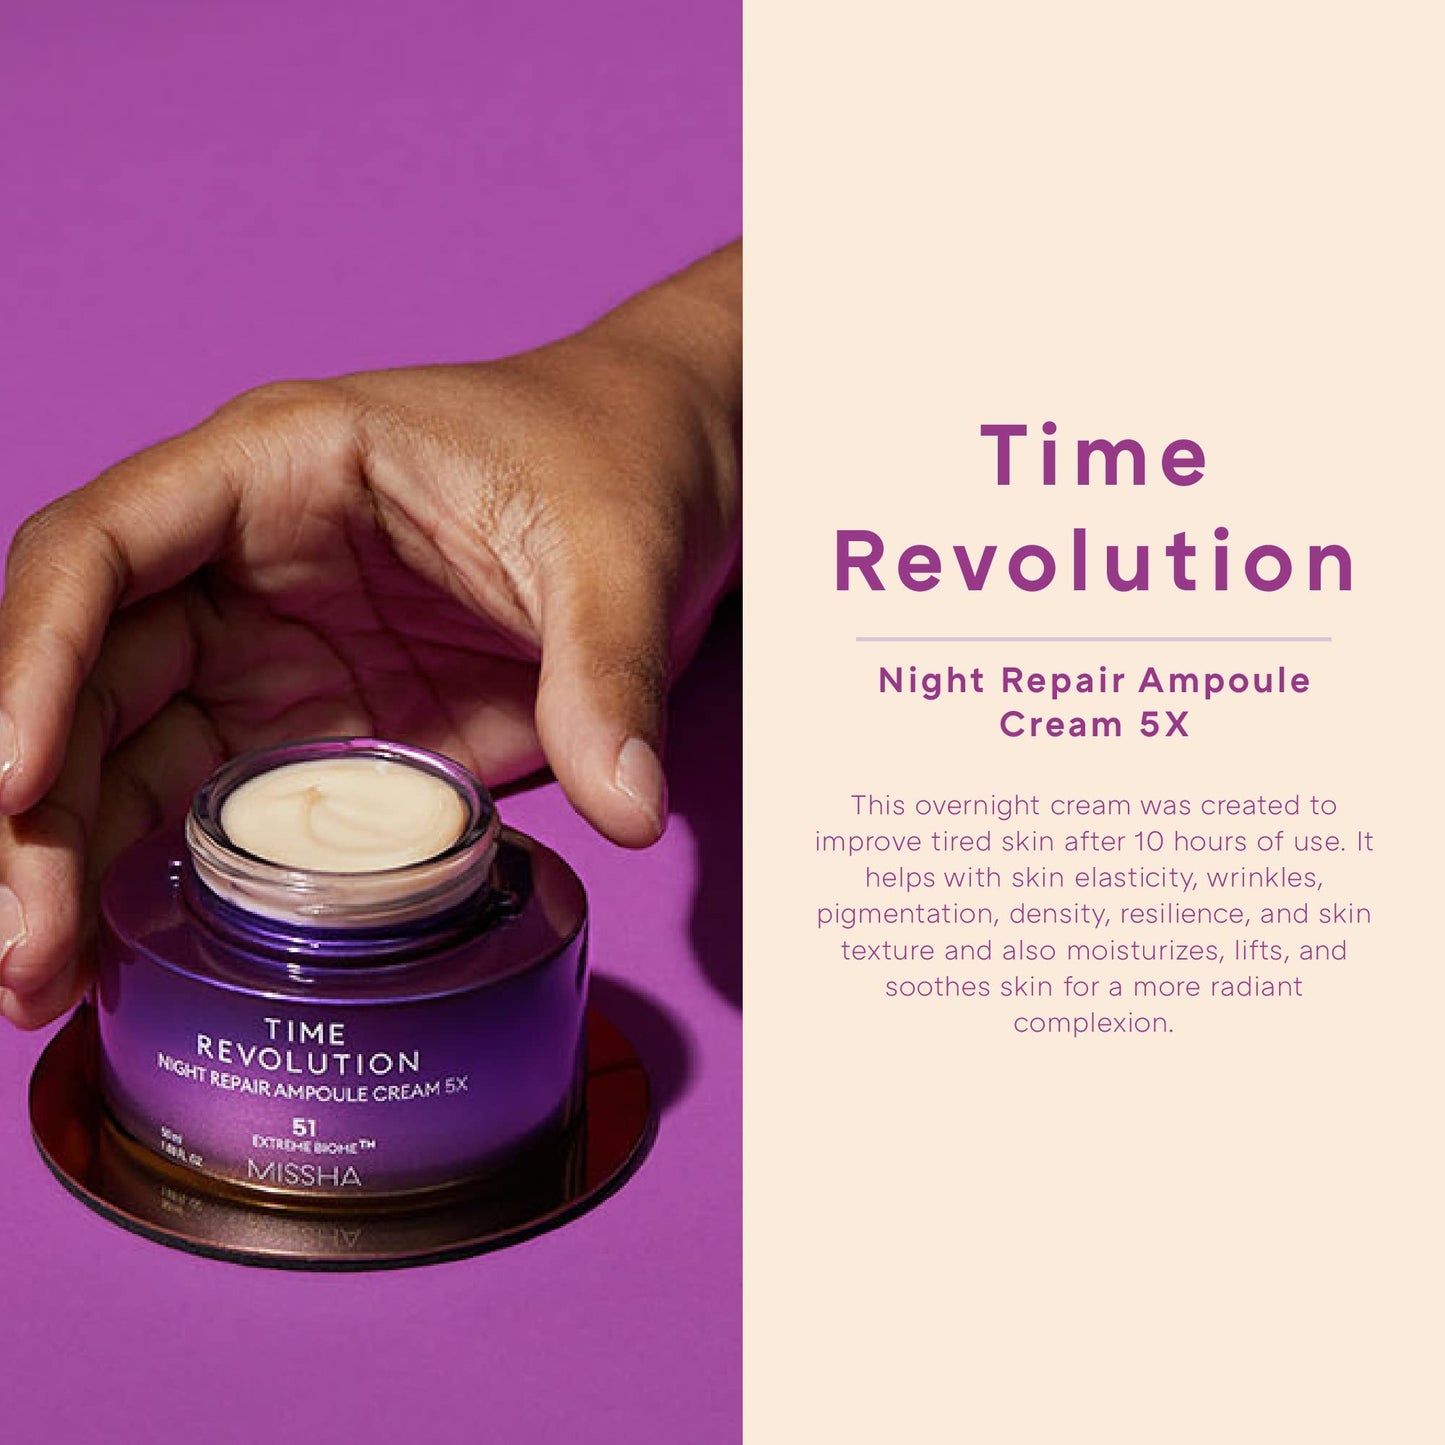 MISSHA Time Revolution Night Repair Ampoule Cream 5x